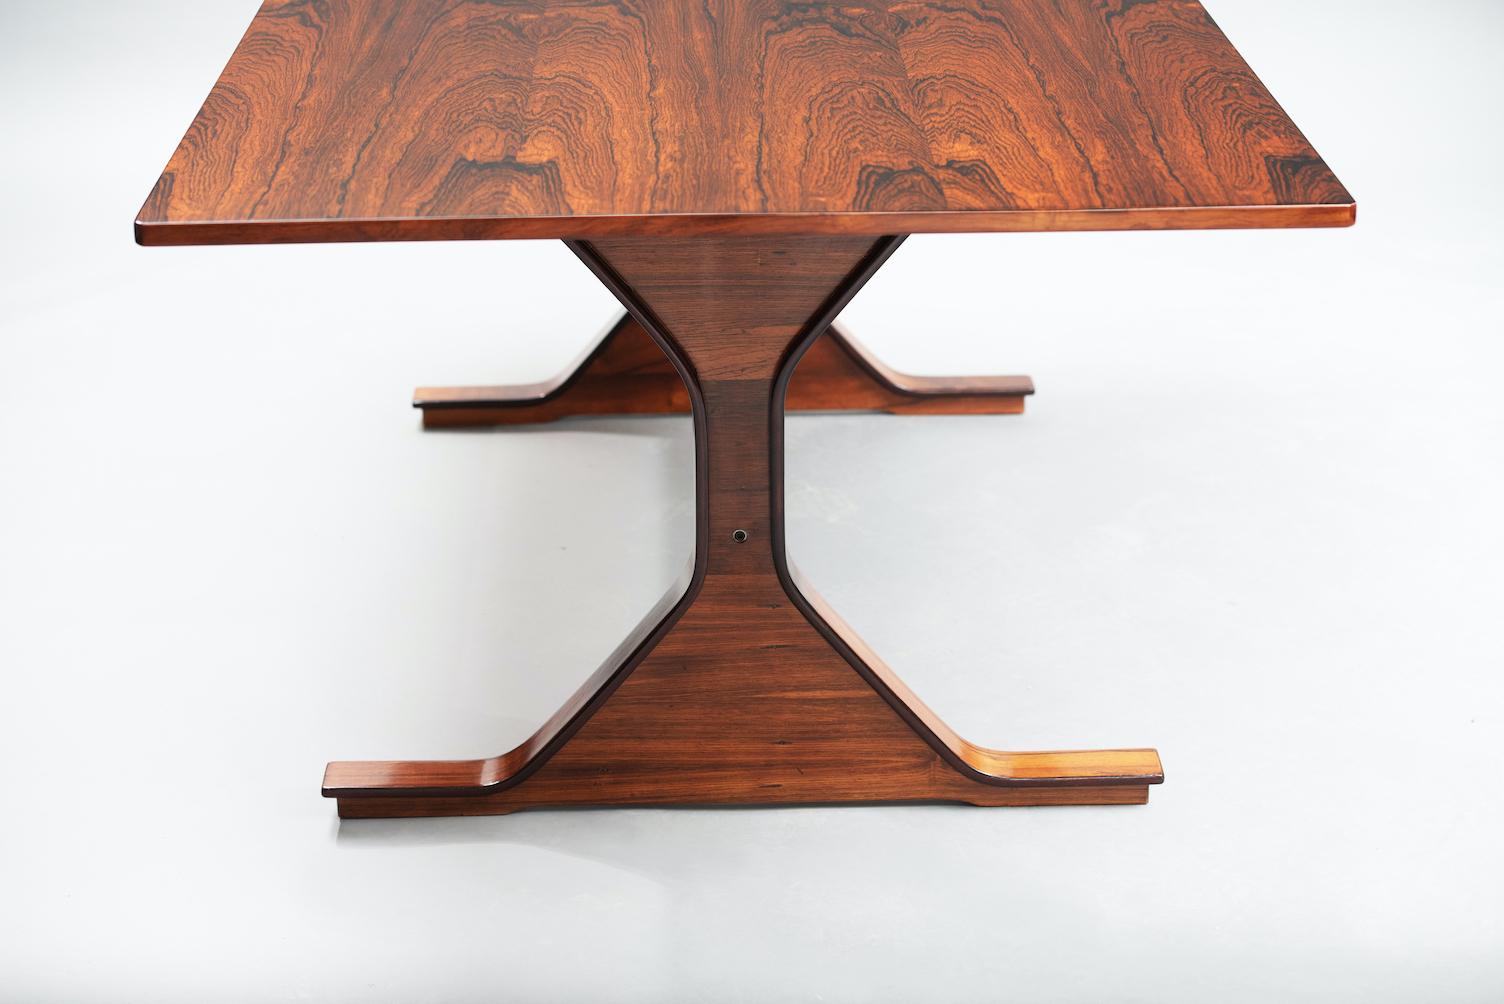 522 modèle de table de salle à manger rectangulaire en Palo Santo, conçu par Gianfranco Frattini pour Bernini.
Une table intemporelle au design iconique, parfaitement réalisée dans un bois très noble.

